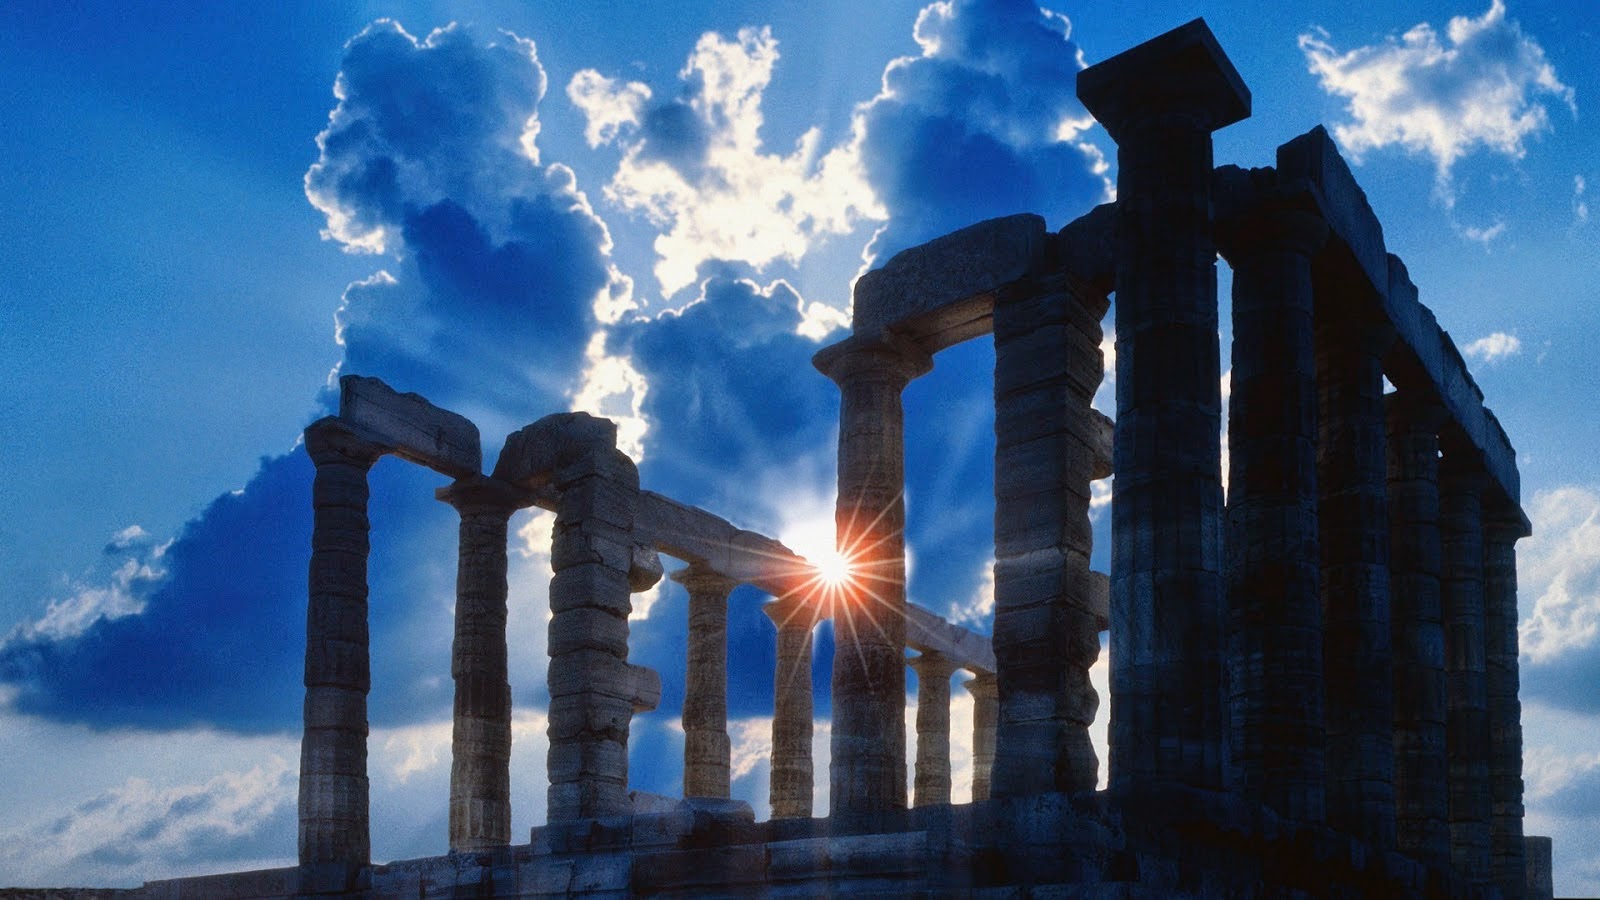 Παγκόσμια προβολή της Ελλάδας! Ένα μαγικό ταξίδι στην ιστορία του σύγχρονου πολιτισμού (video)